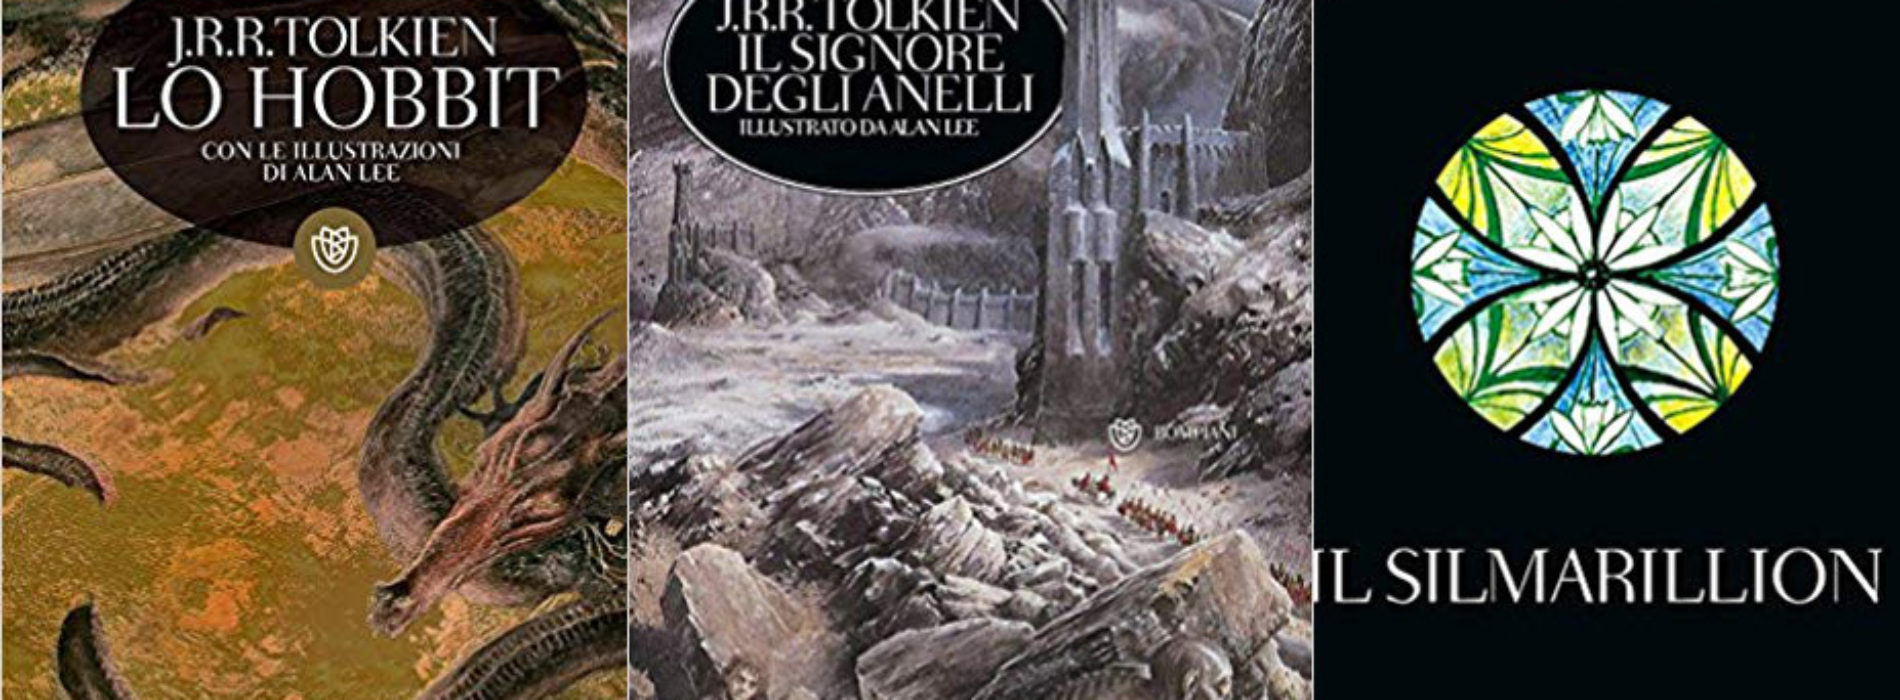 I Tre Libri fondamentali di J.R.R. Tolkien